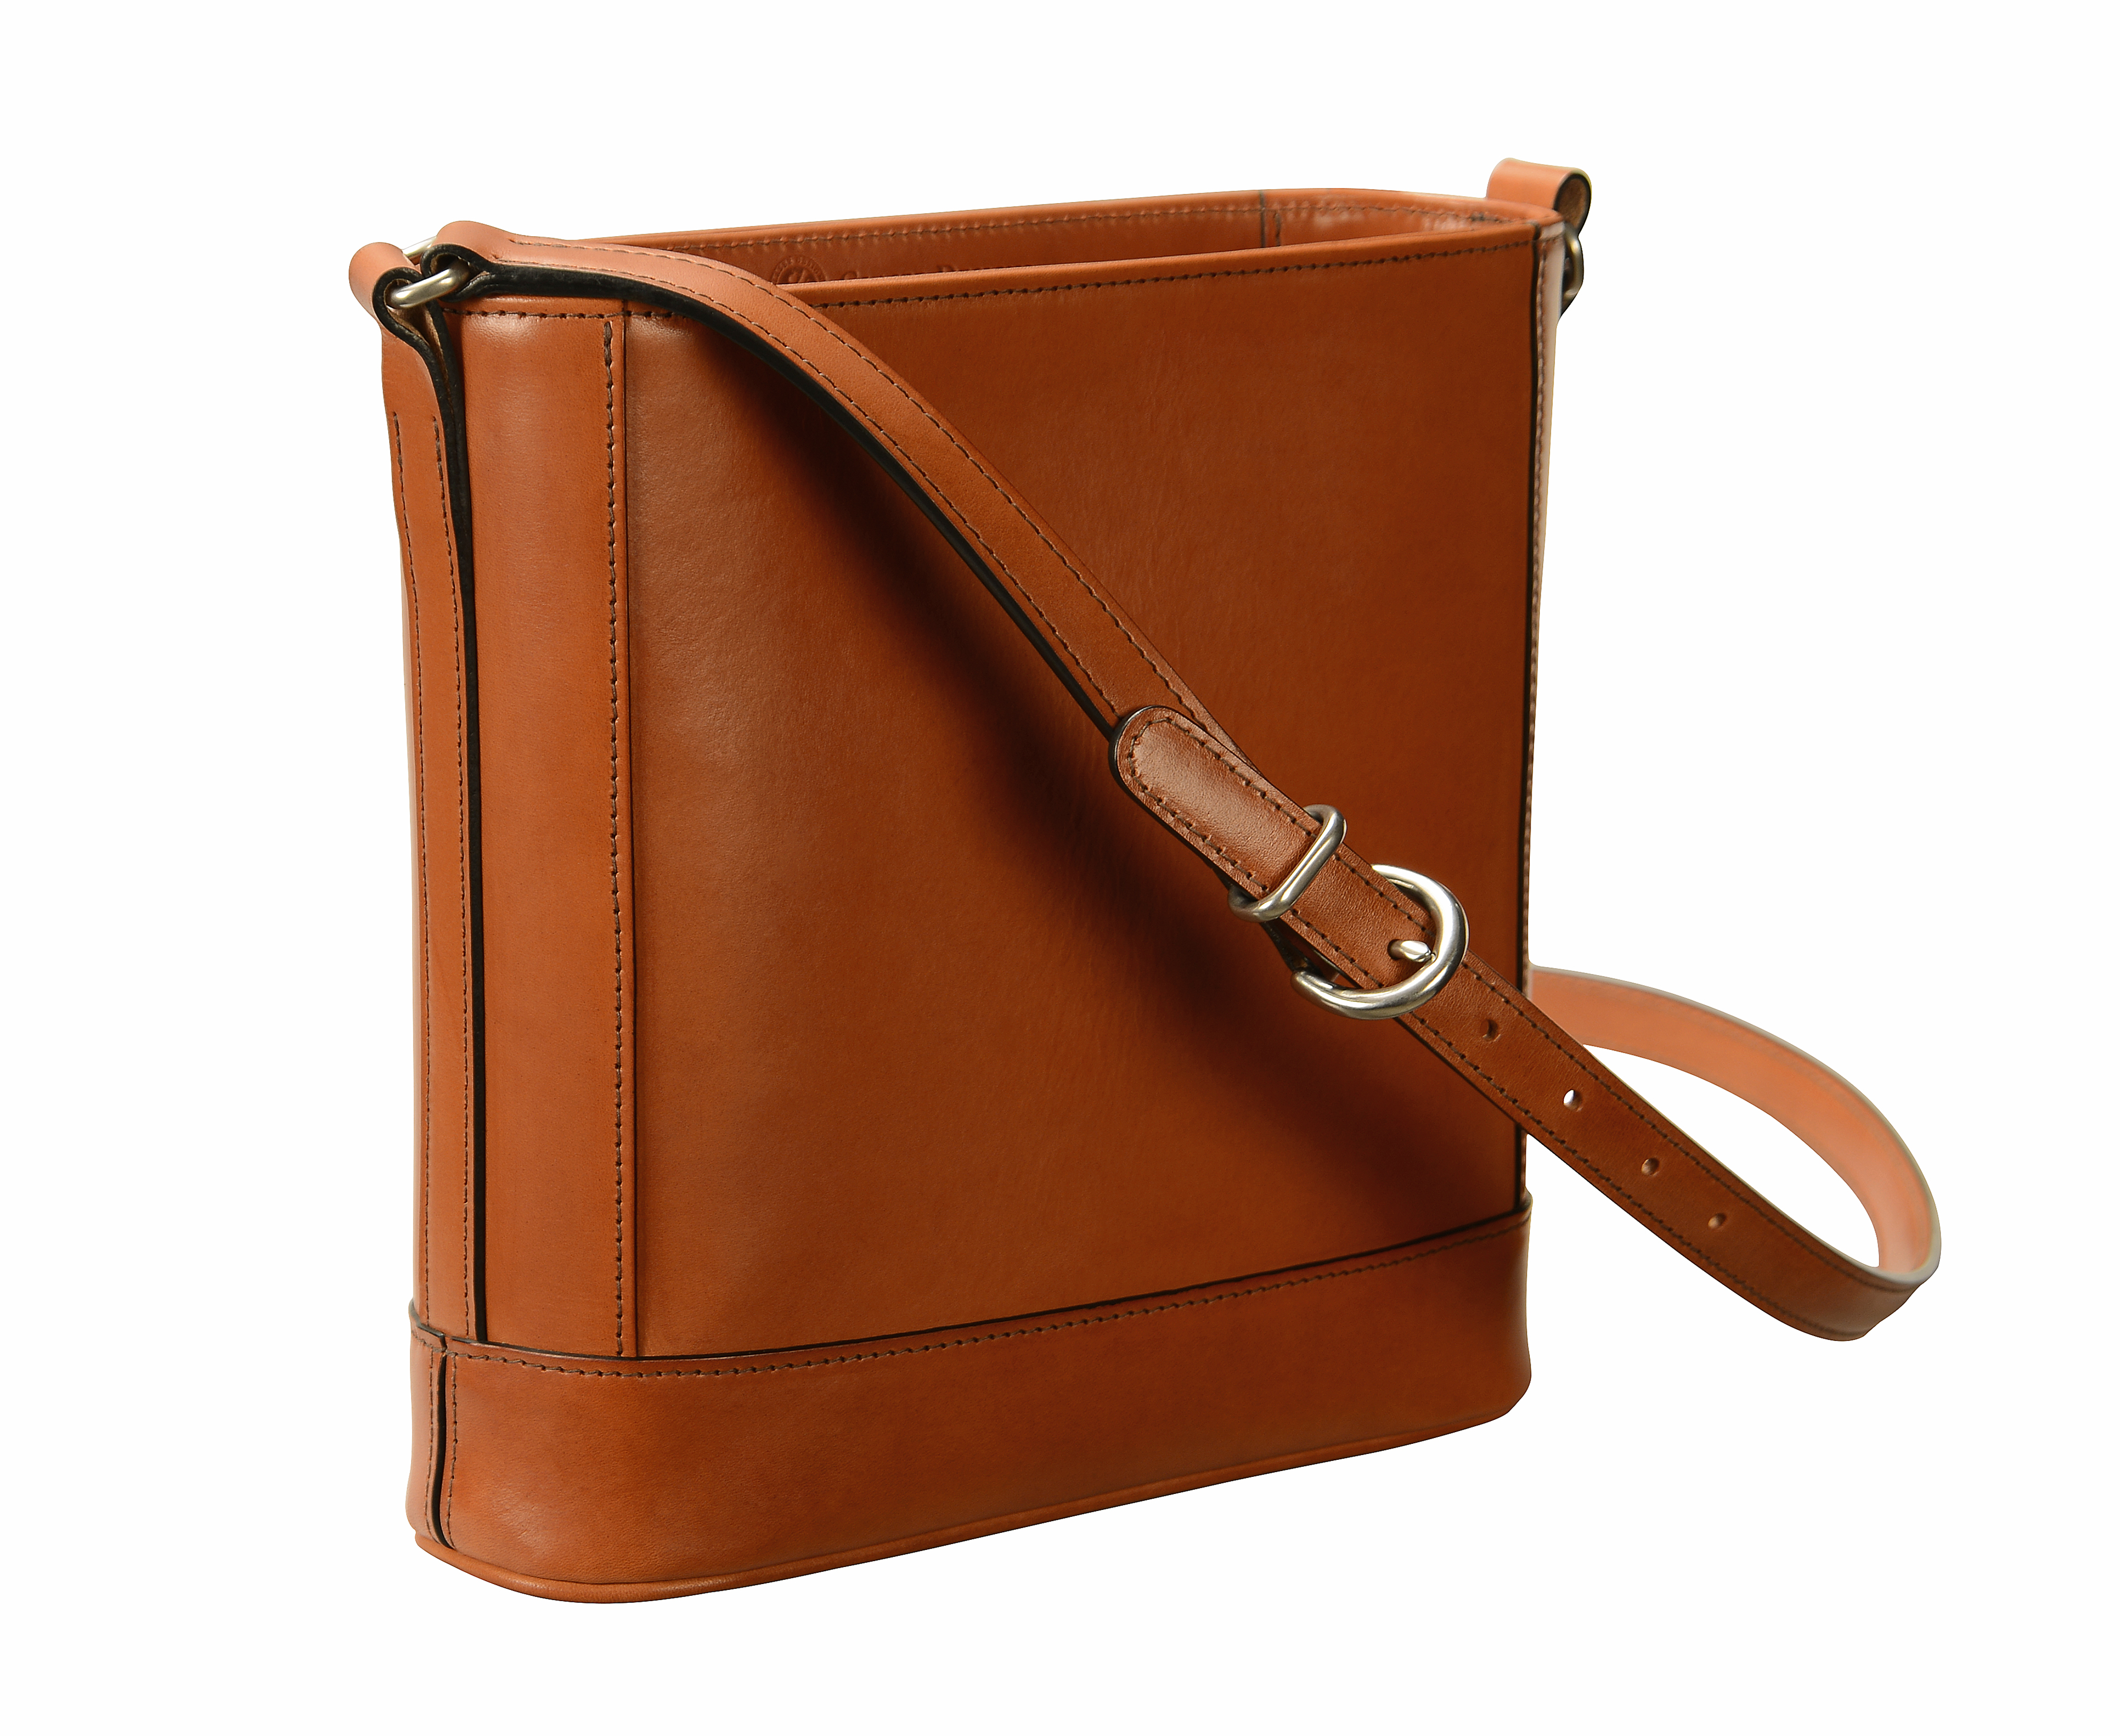 long strap shoulder bag | Glaser Designs Blog